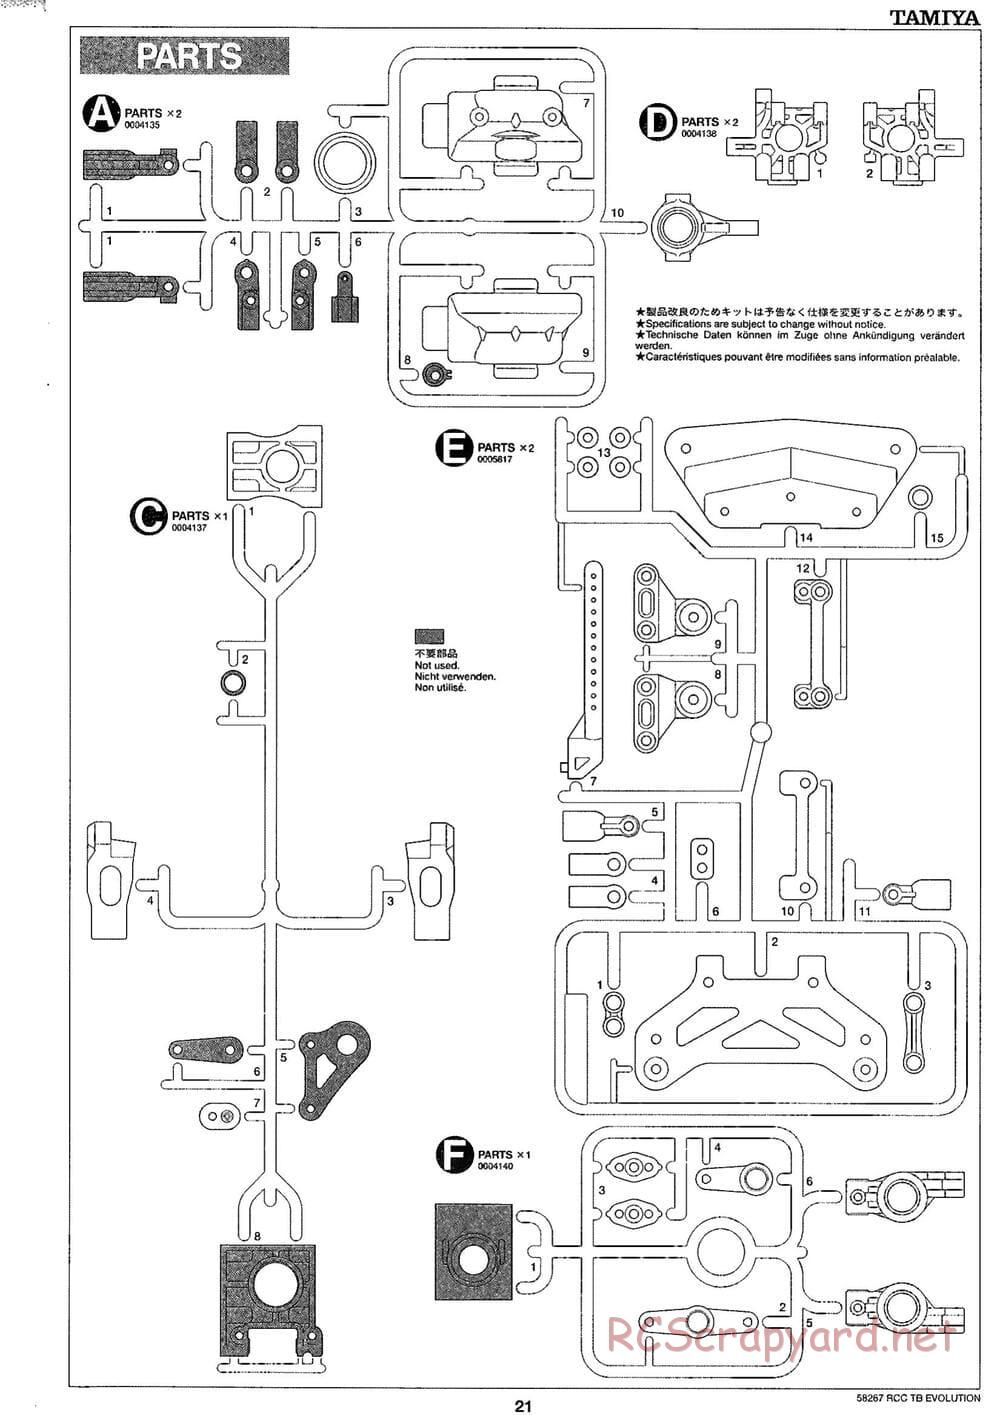 Tamiya - TB Evolution Chassis - Manual - Page 21